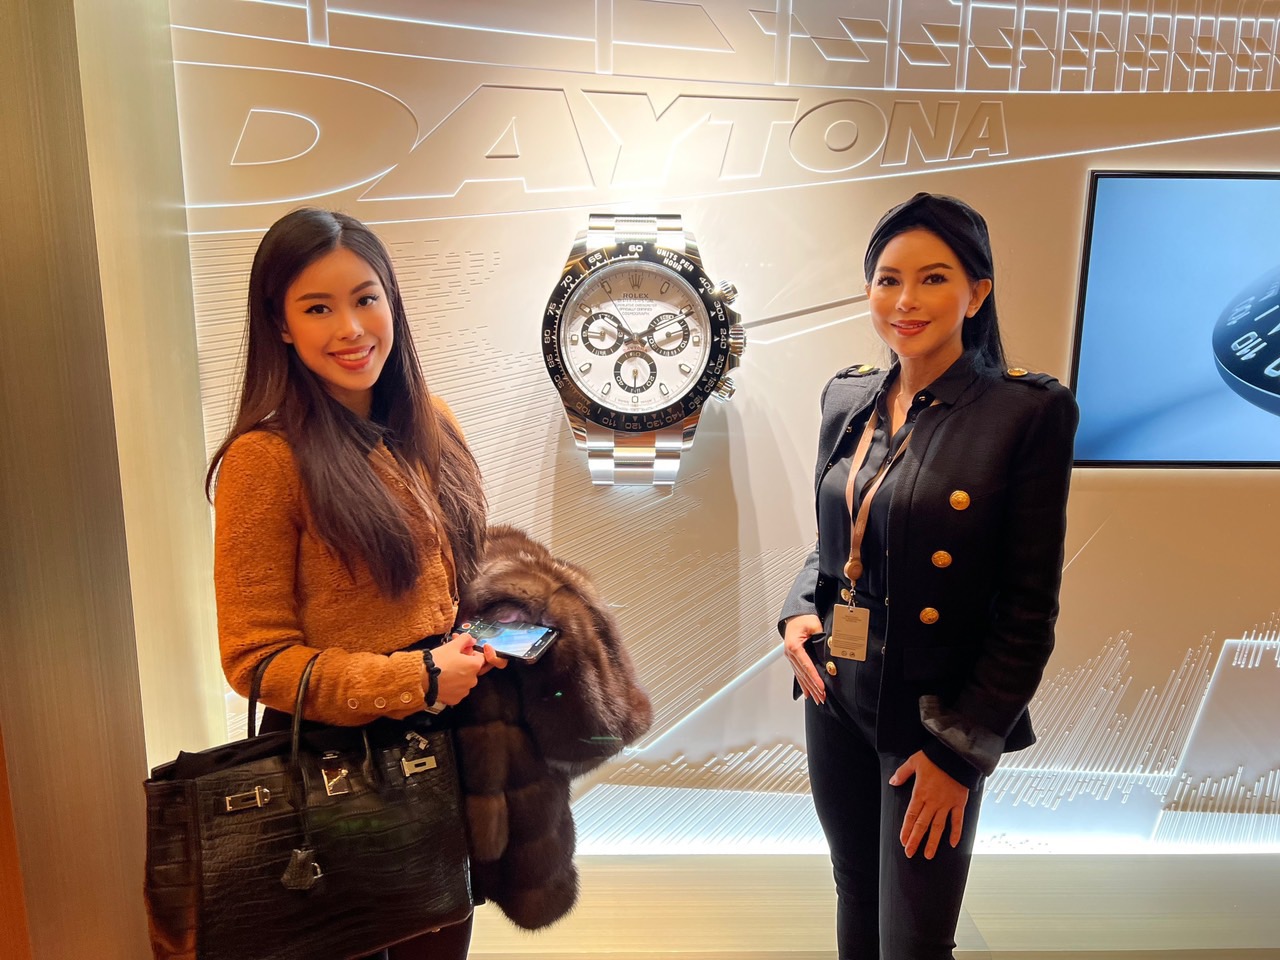 Tiên Nguyễn 1 Tiên Nguyễn cùng mẹ dự show đồng hồ lớn nhất thế giới tại Thụy Sĩ